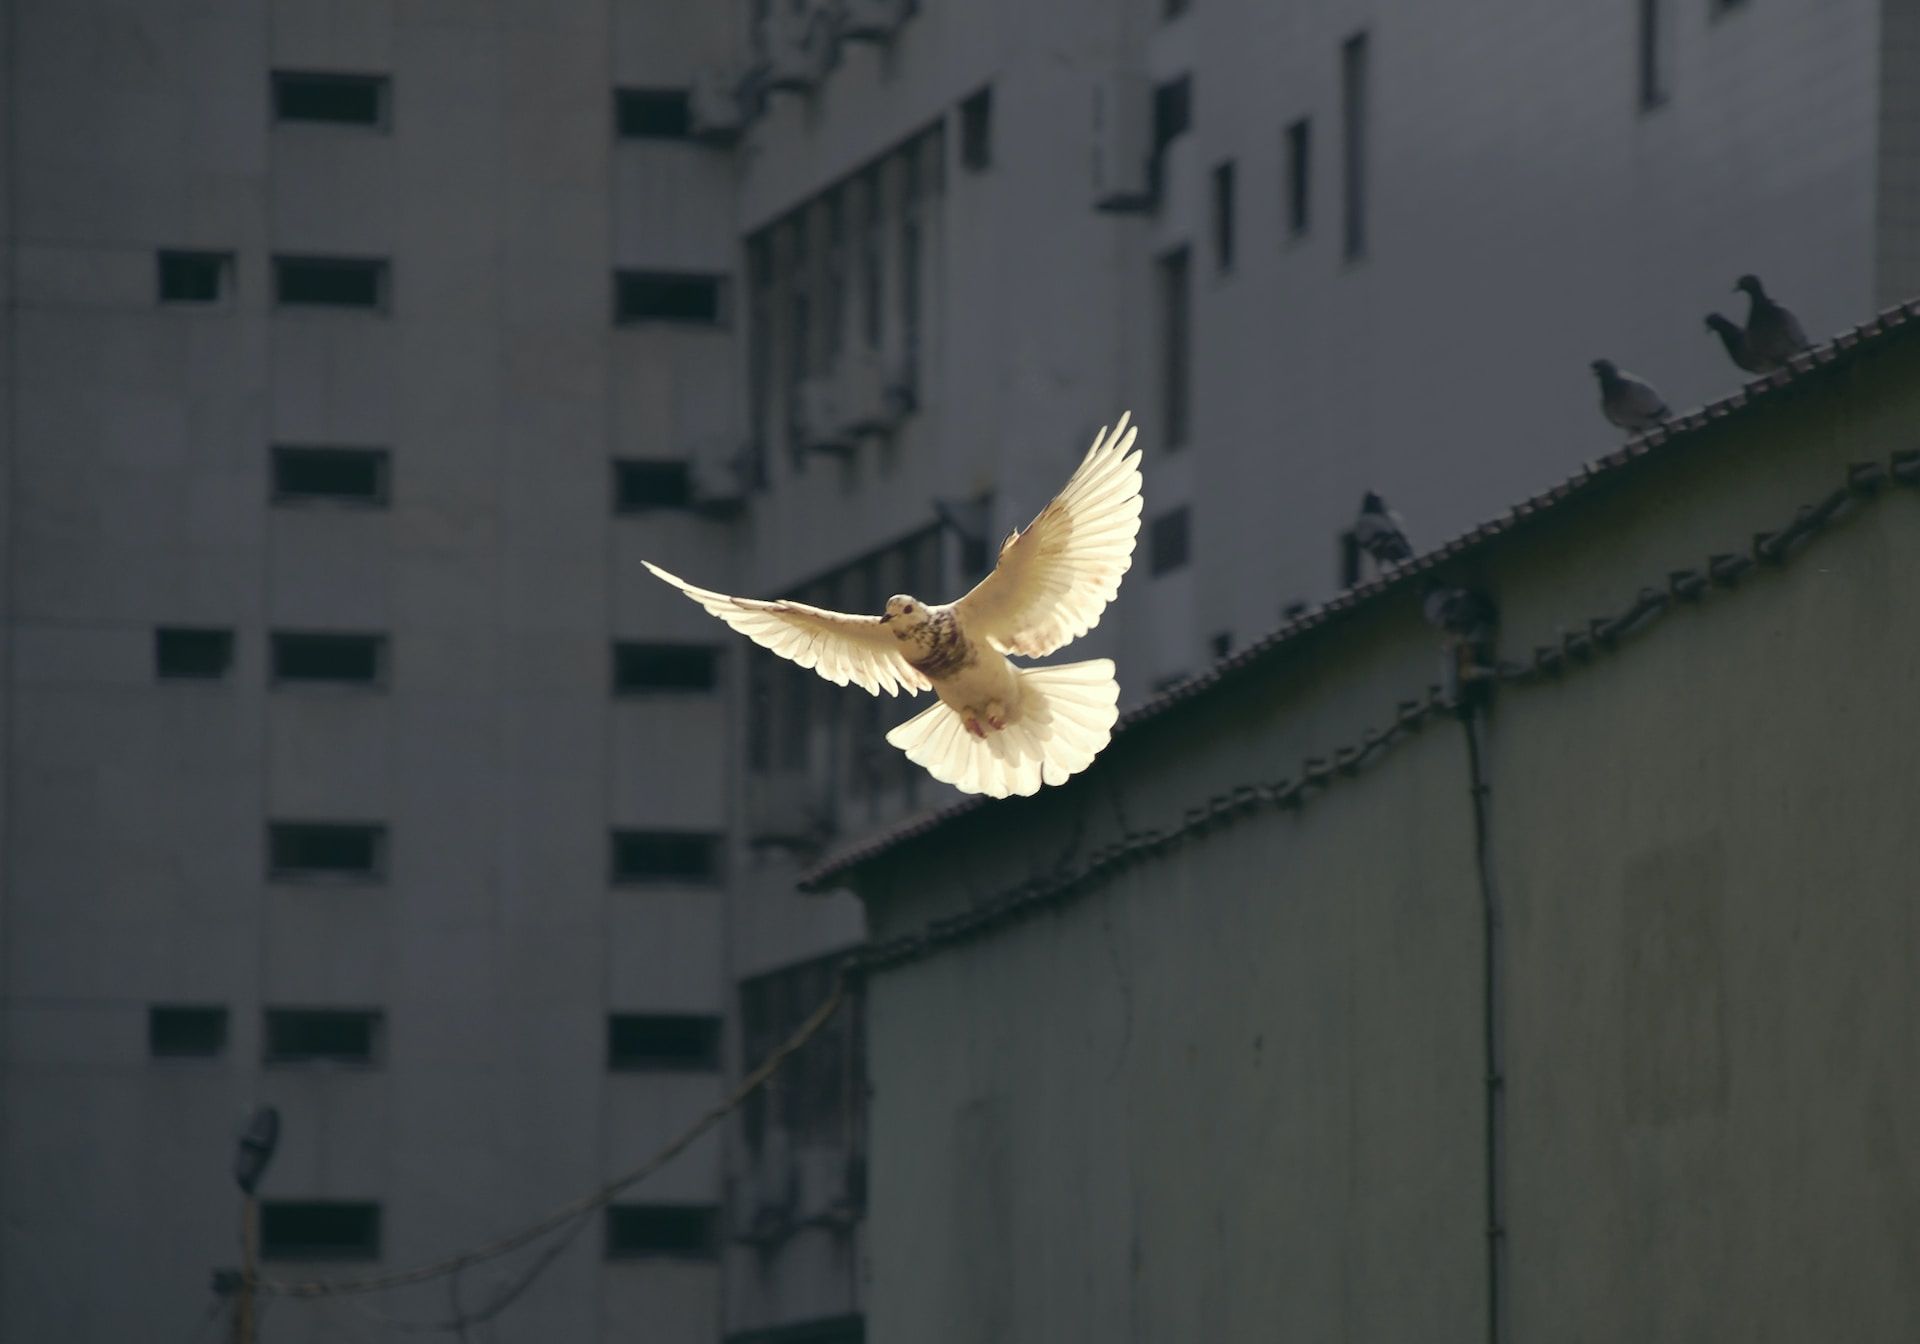 une colombe en pleine lumiÃ¨re sur un fond d'immeubles sombres - Photo de Sunguk Kim sur https://unsplash.com/fr/photos/JhqBxsORuXA